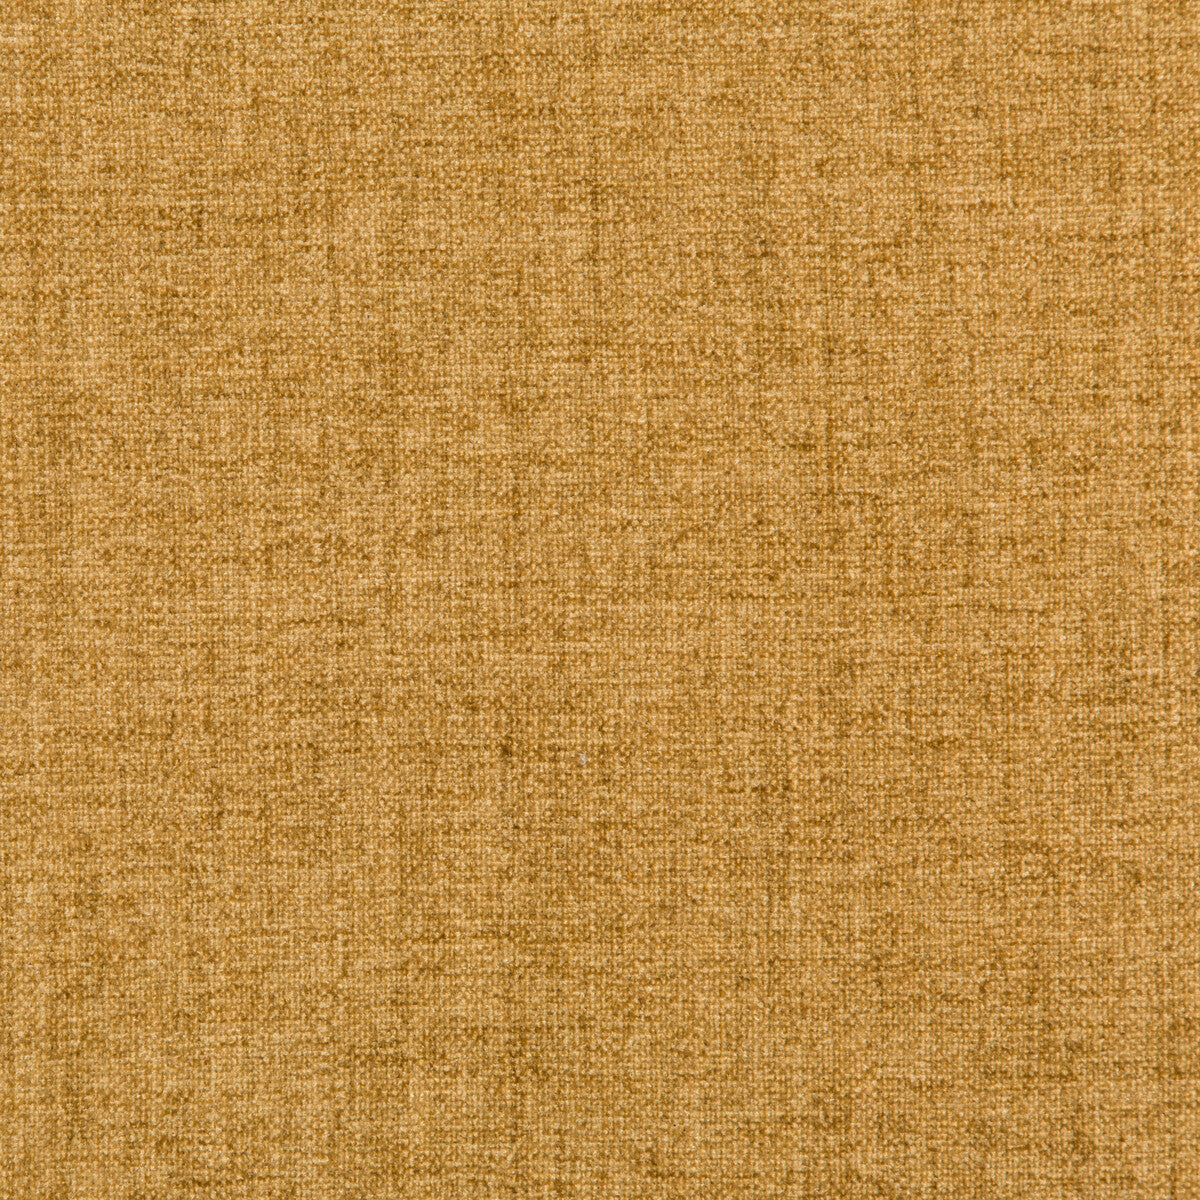 Kravet Basics fabric in 35775-516 color - pattern 35775.516.0 - by Kravet Basics